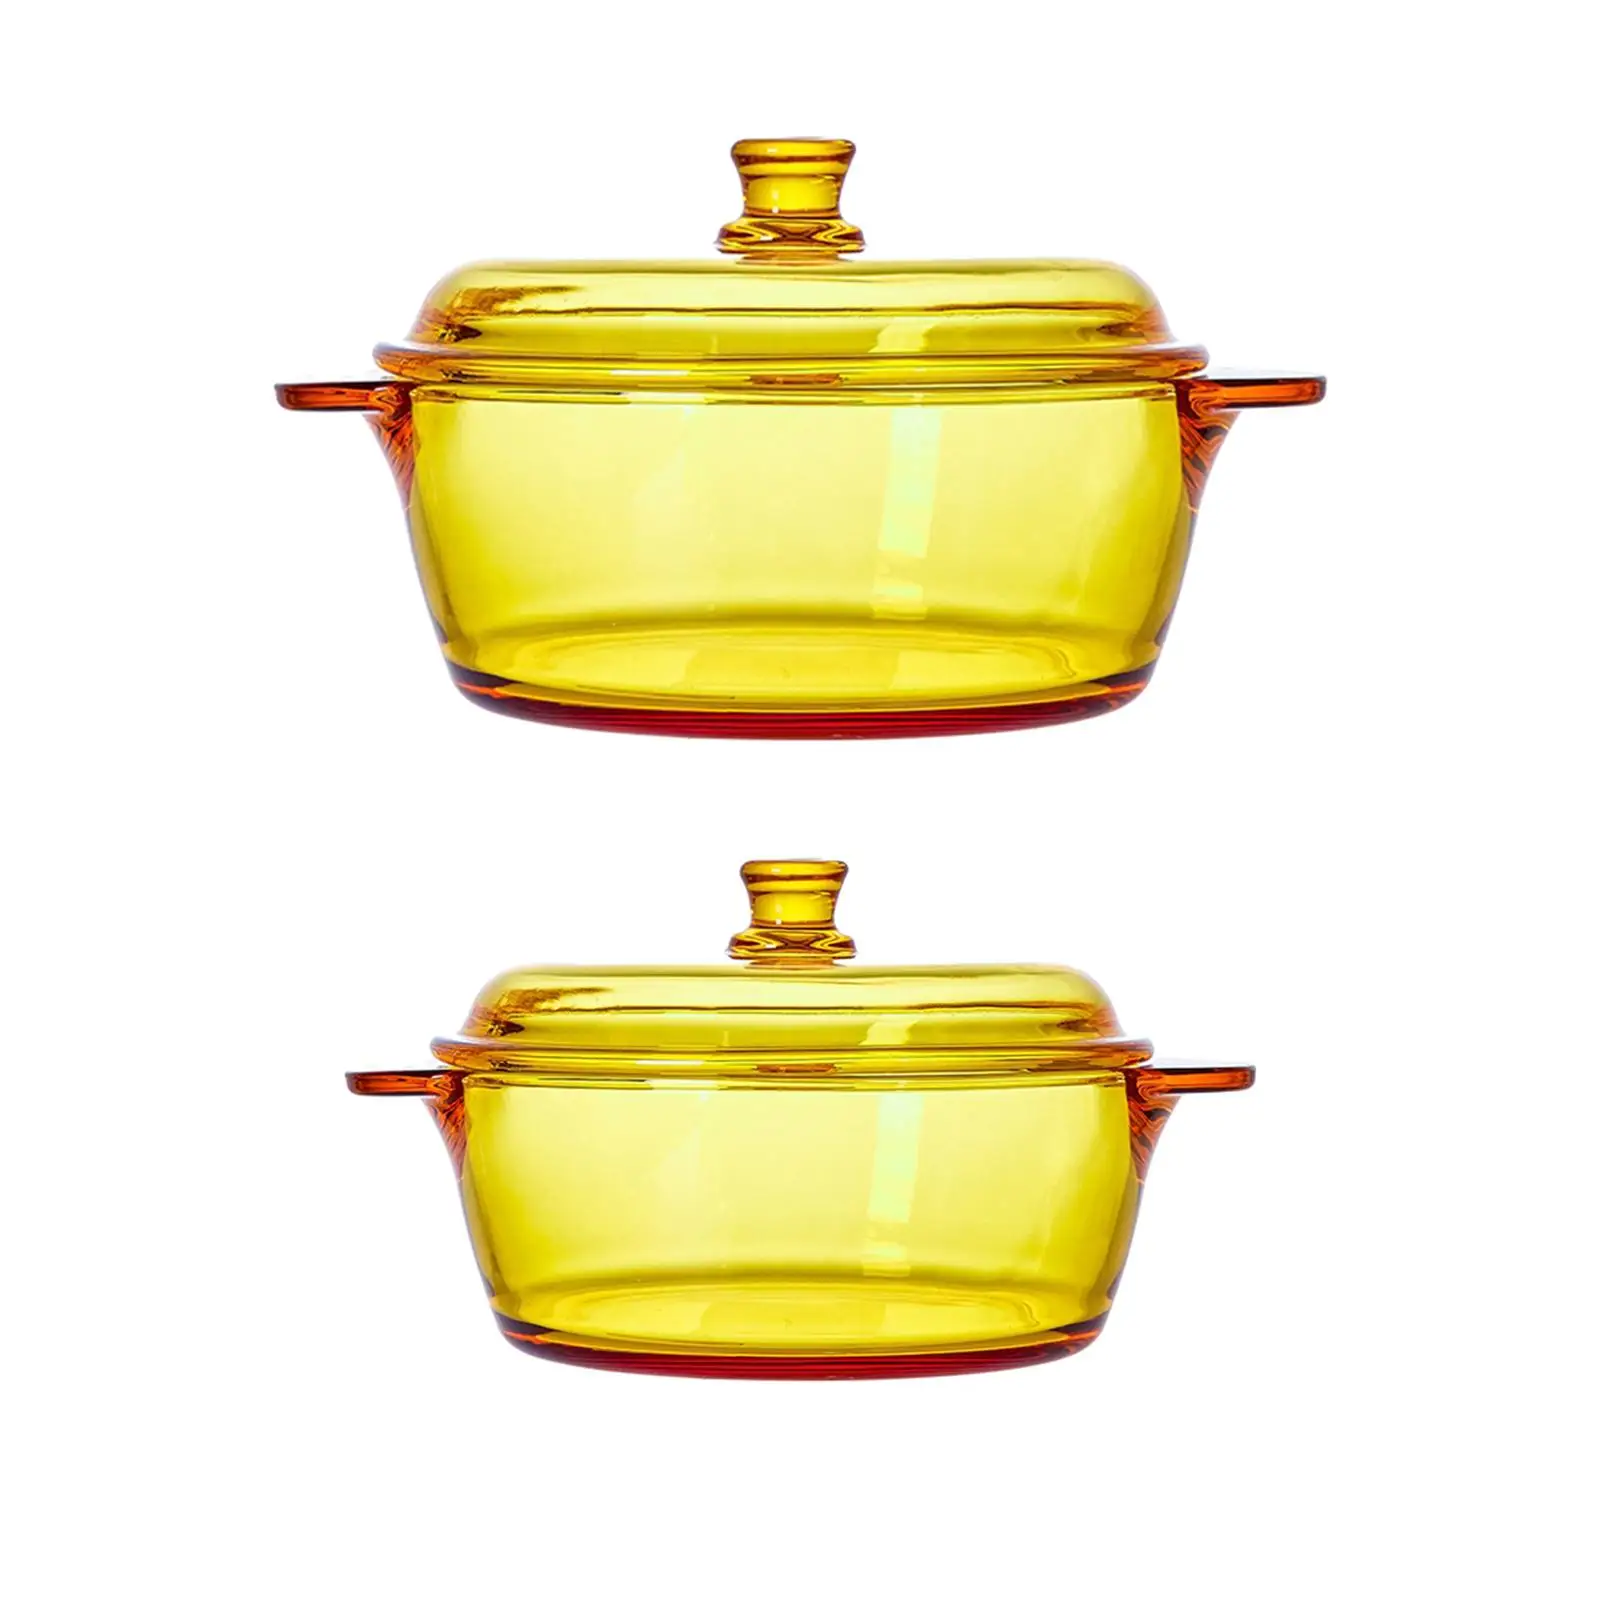 Heat Resistant Noodles Bowl Serving Bowl Multipurpose Portable Freezer Glass Salad Bowl for Dessert Sauces Egg Cereal Snack